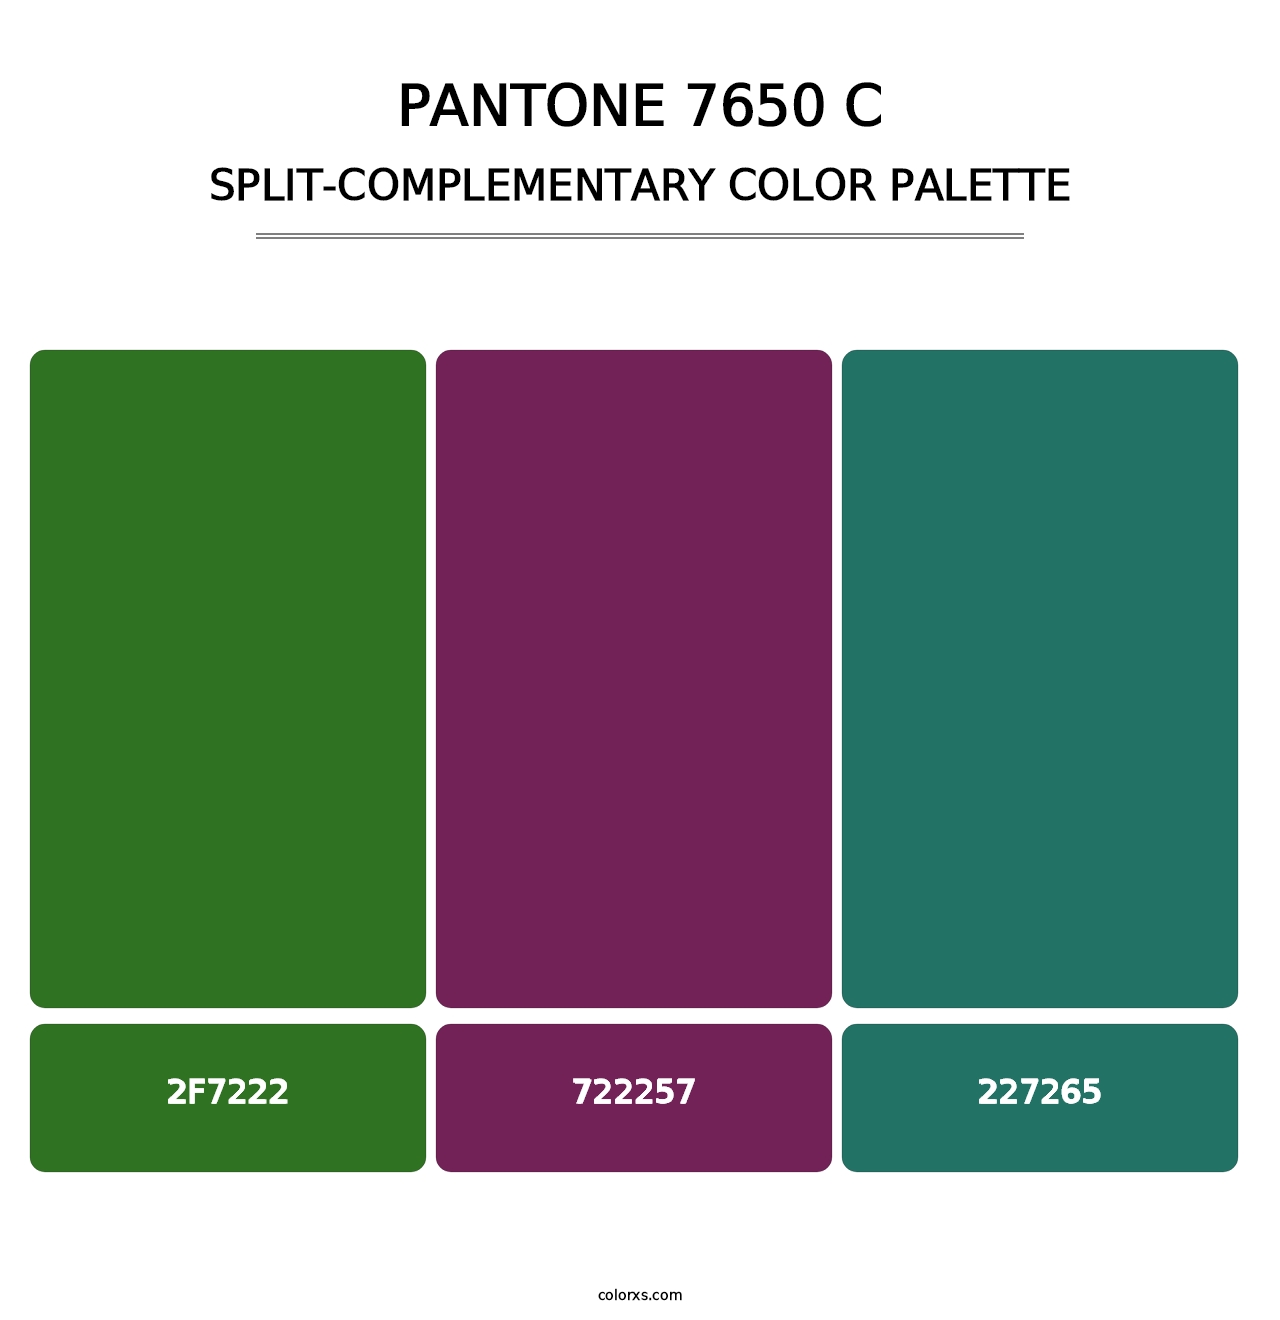 PANTONE 7650 C - Split-Complementary Color Palette